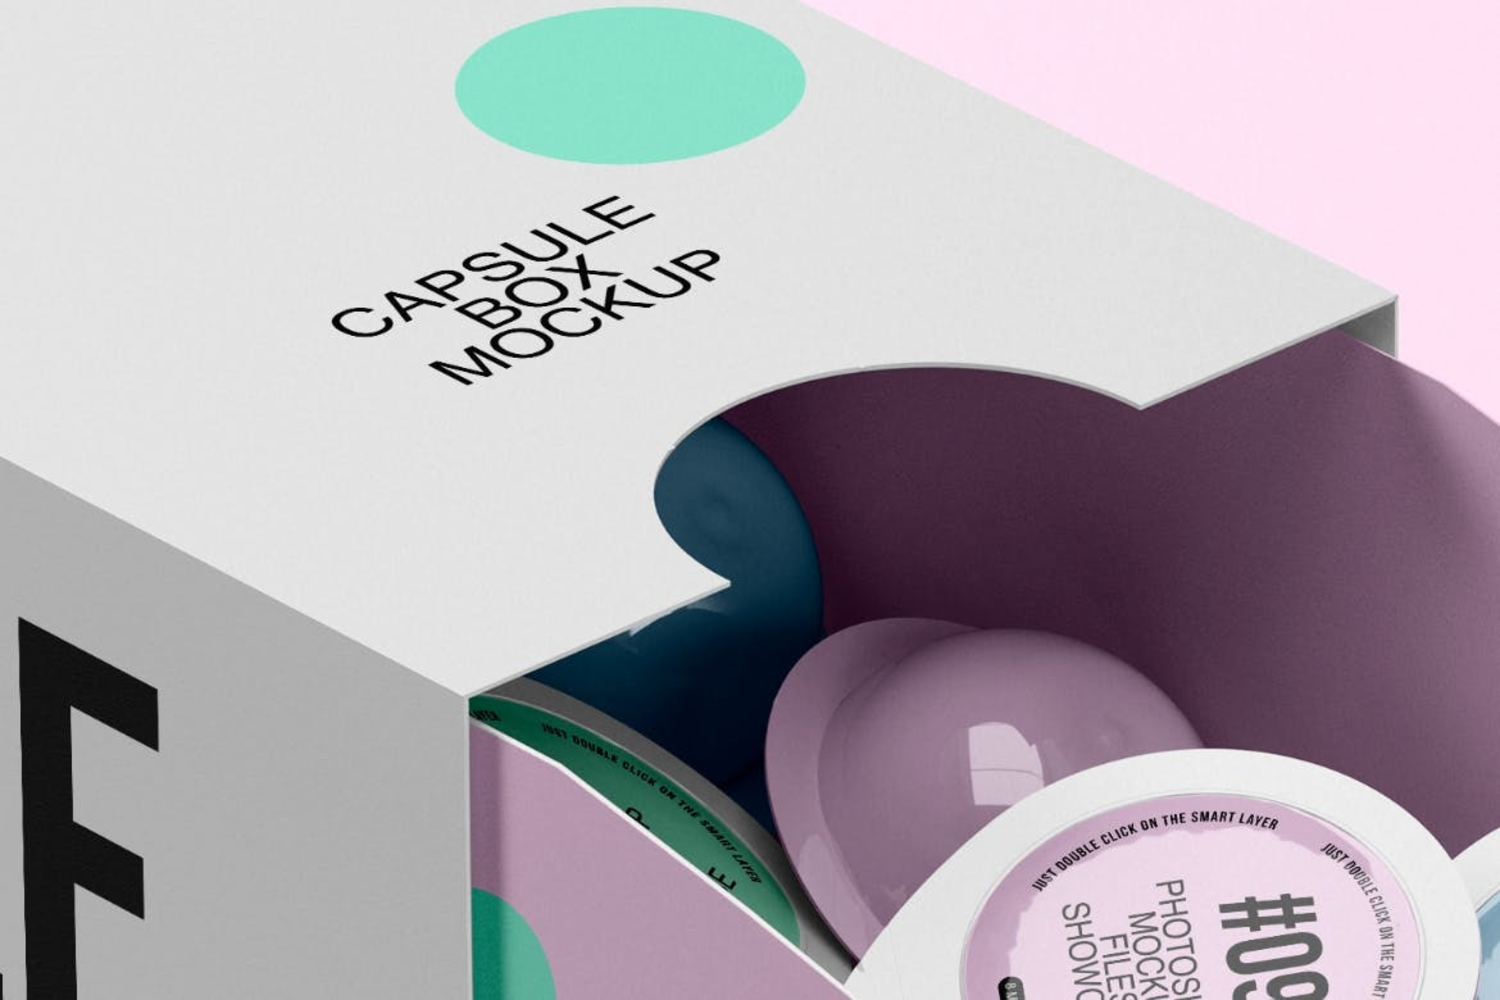 4221 咖啡胶囊盒品牌推广展示ps包装样机素材设计mockup模板 Capsule Box Mockup@GOOODME.COM